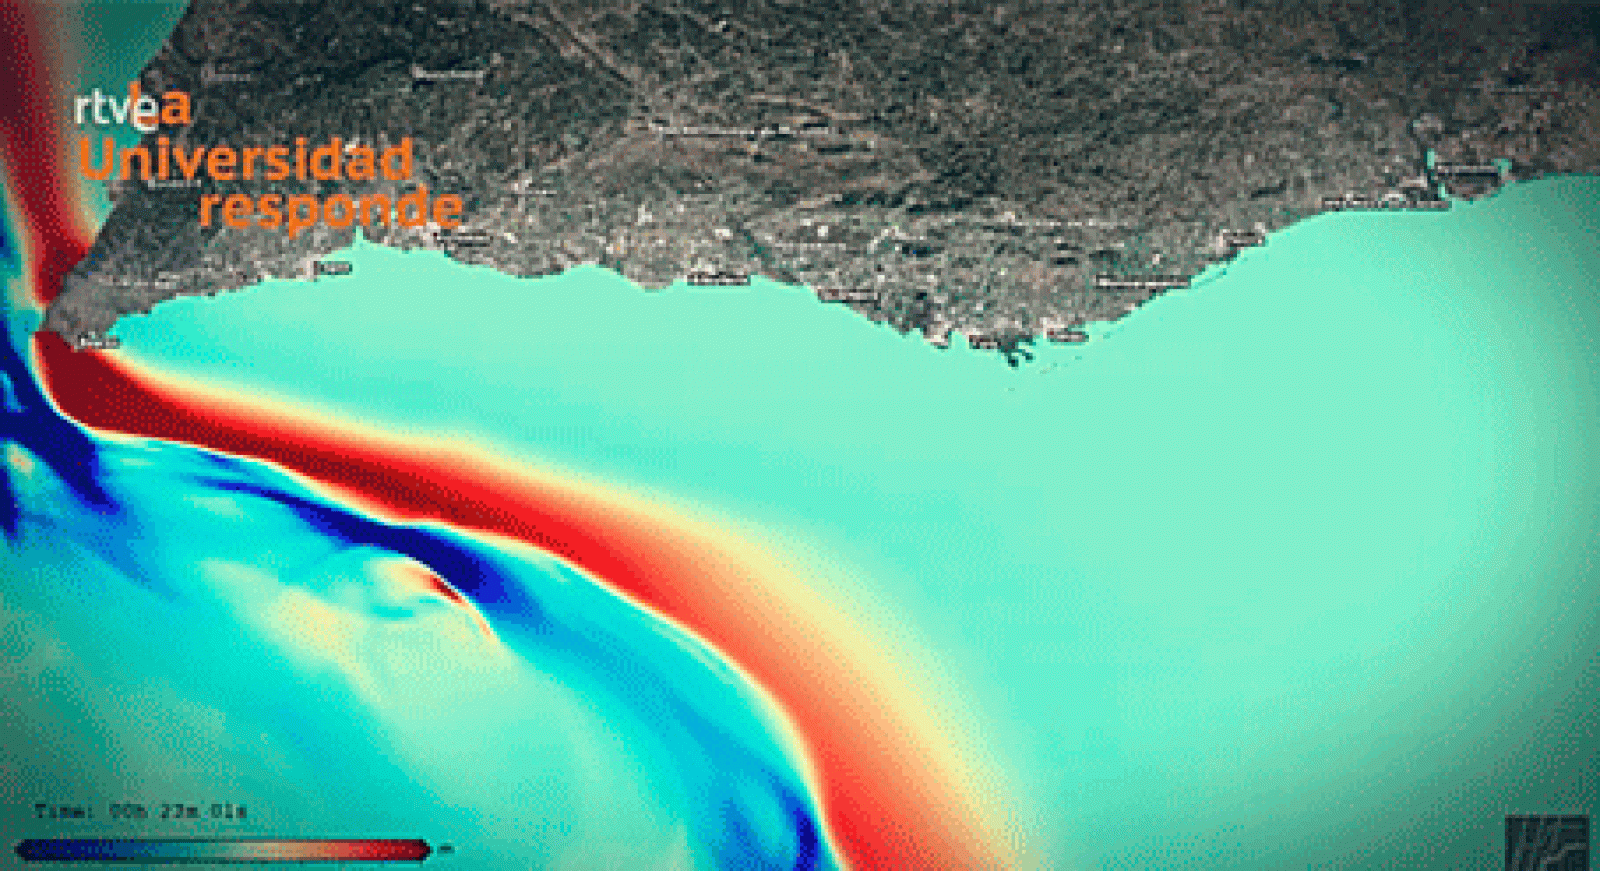 La aventura del saber - ¿Pueden las matemáticas responder ante un tsunami? 